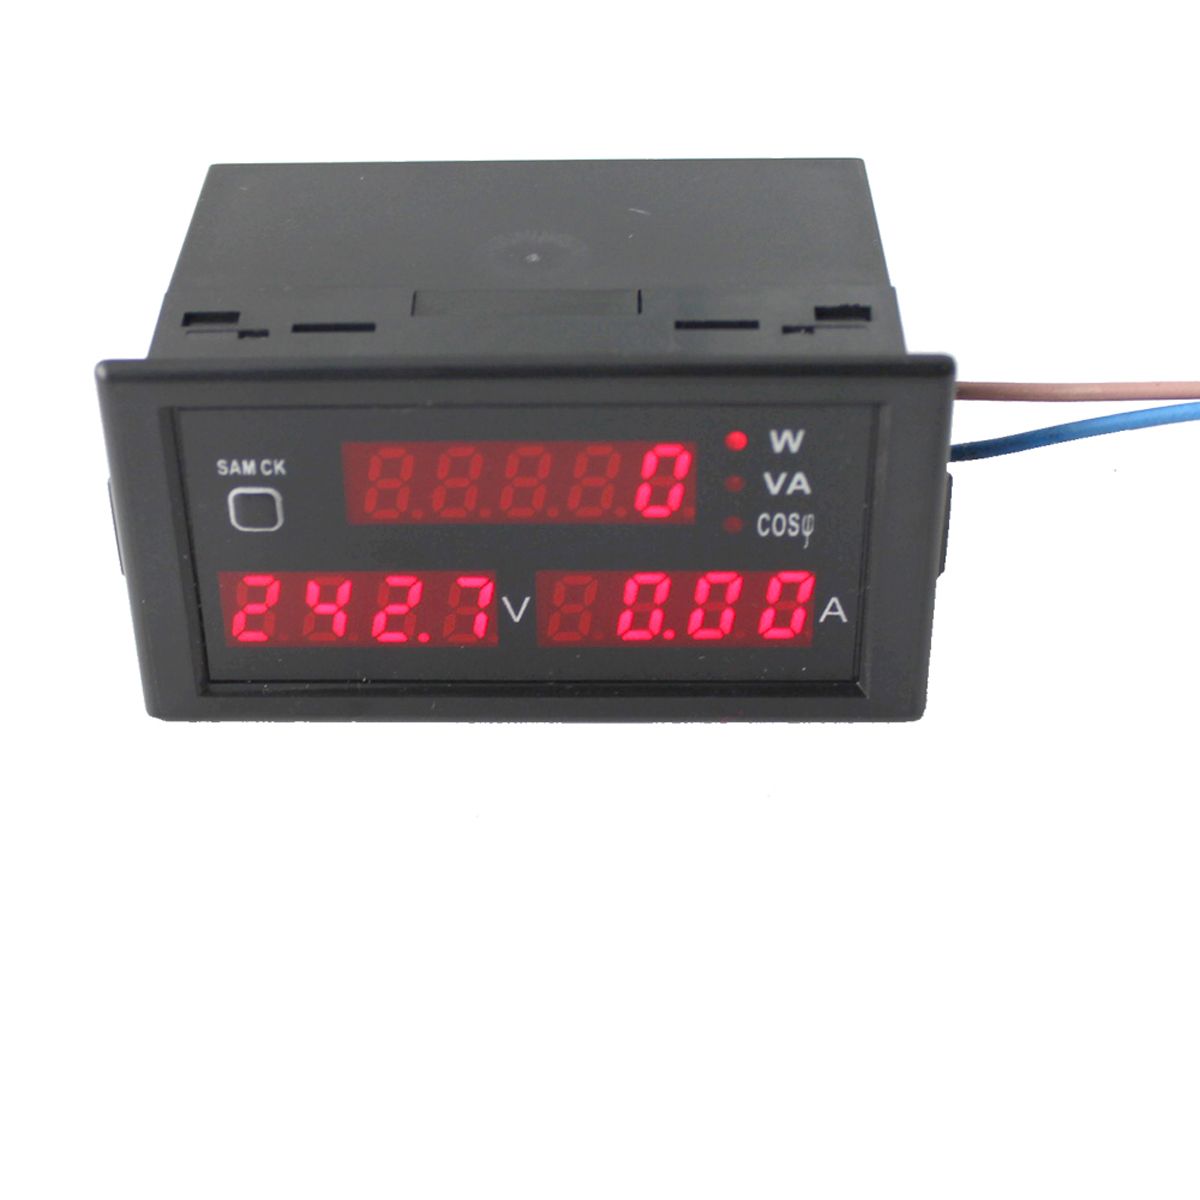 DL69-2048-LCD-Digital-Multifunctional-AC-Voltmeter-Ammeter-Voltage-Current-Meter-AC-80-300V-1444184